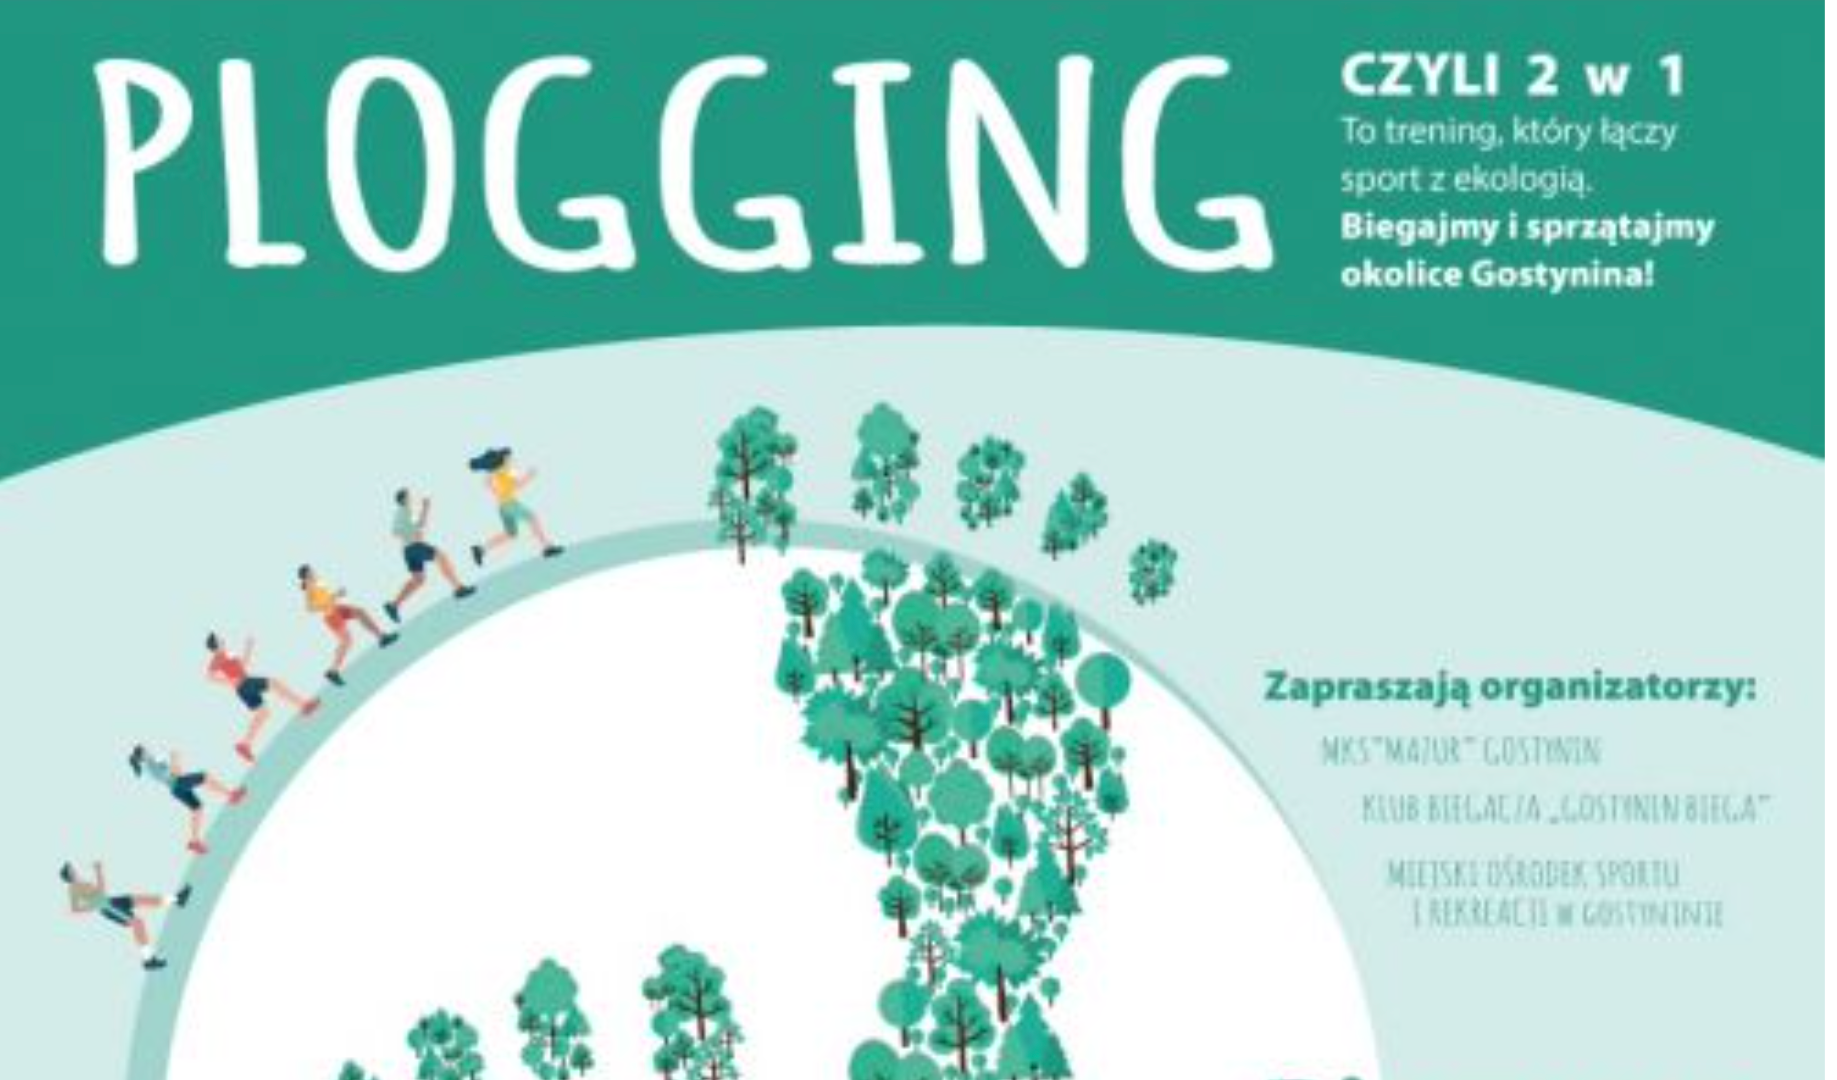 Plogging, czyli biegniemy i sprzątamy okolice Gostynina - Zdjęcie główne